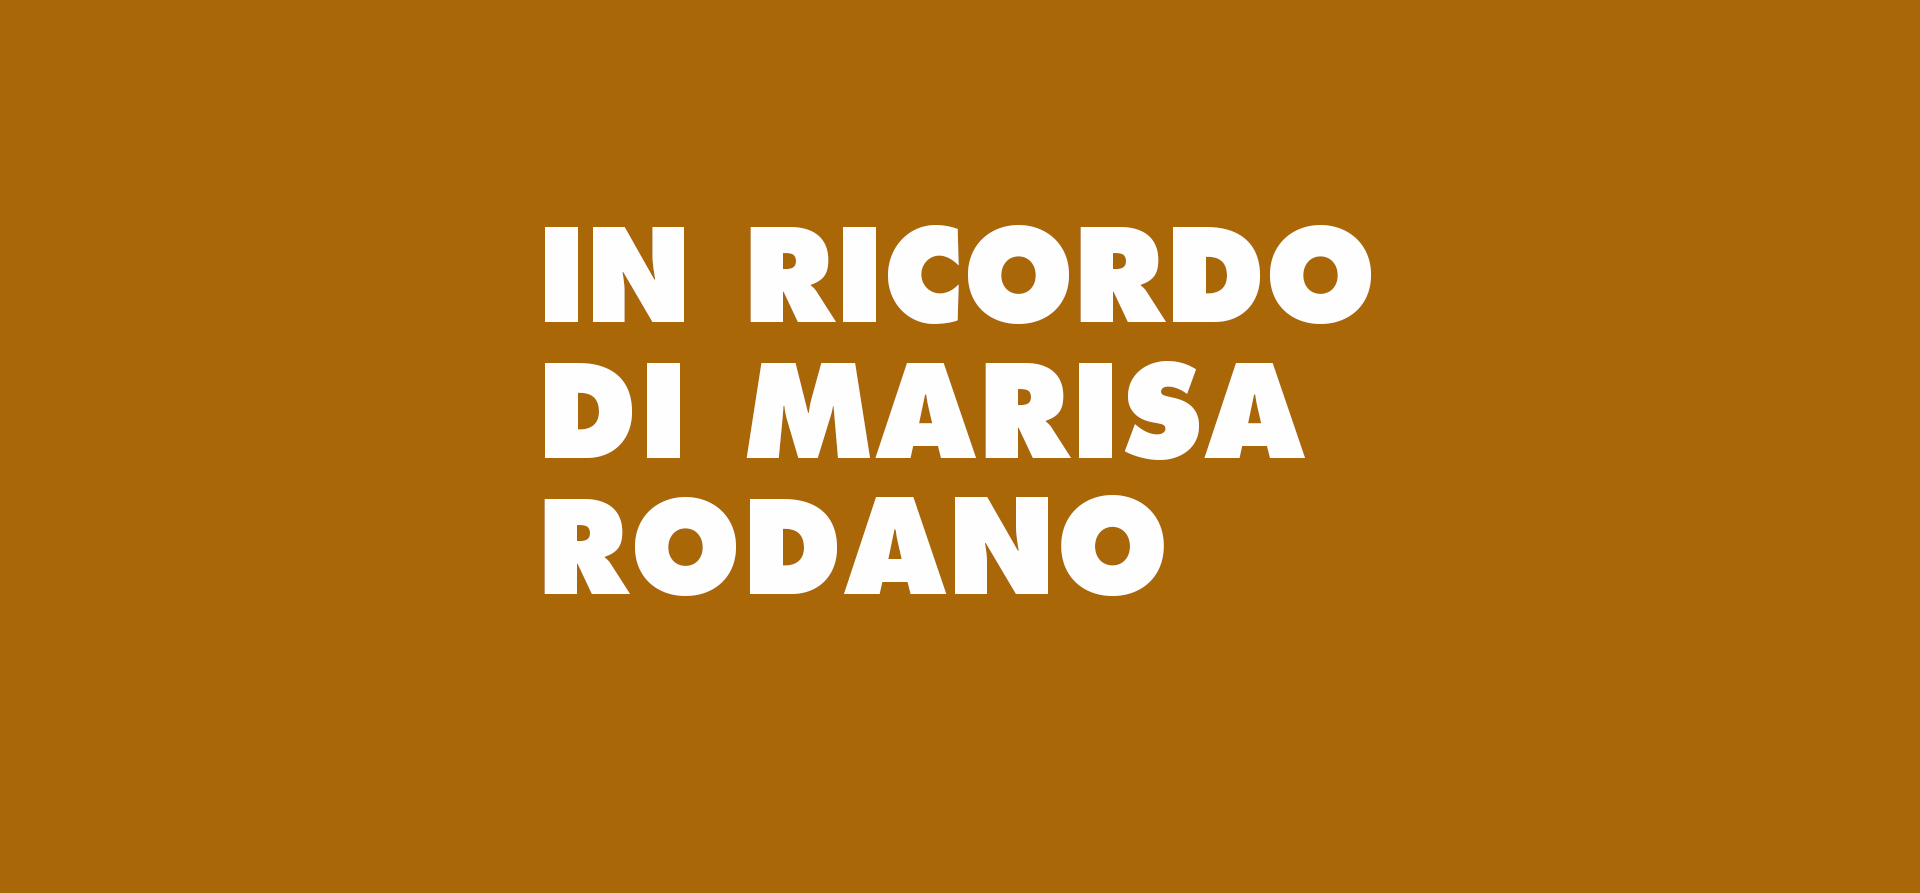 IN RICORDO DI MARISA RODANO